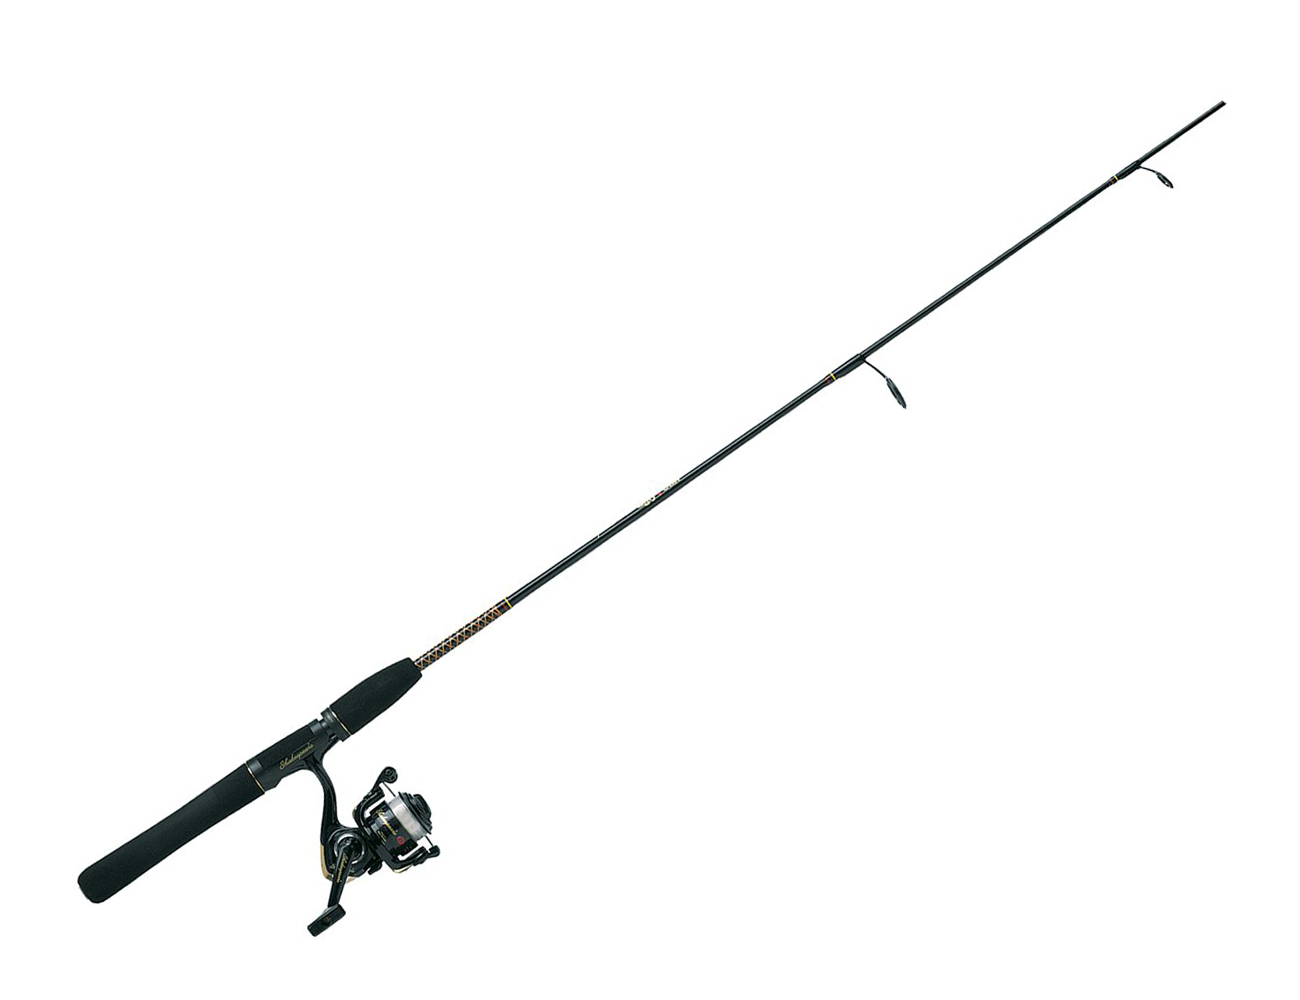 Fishing pole fishing rod clip - Fishing Rod Clipart